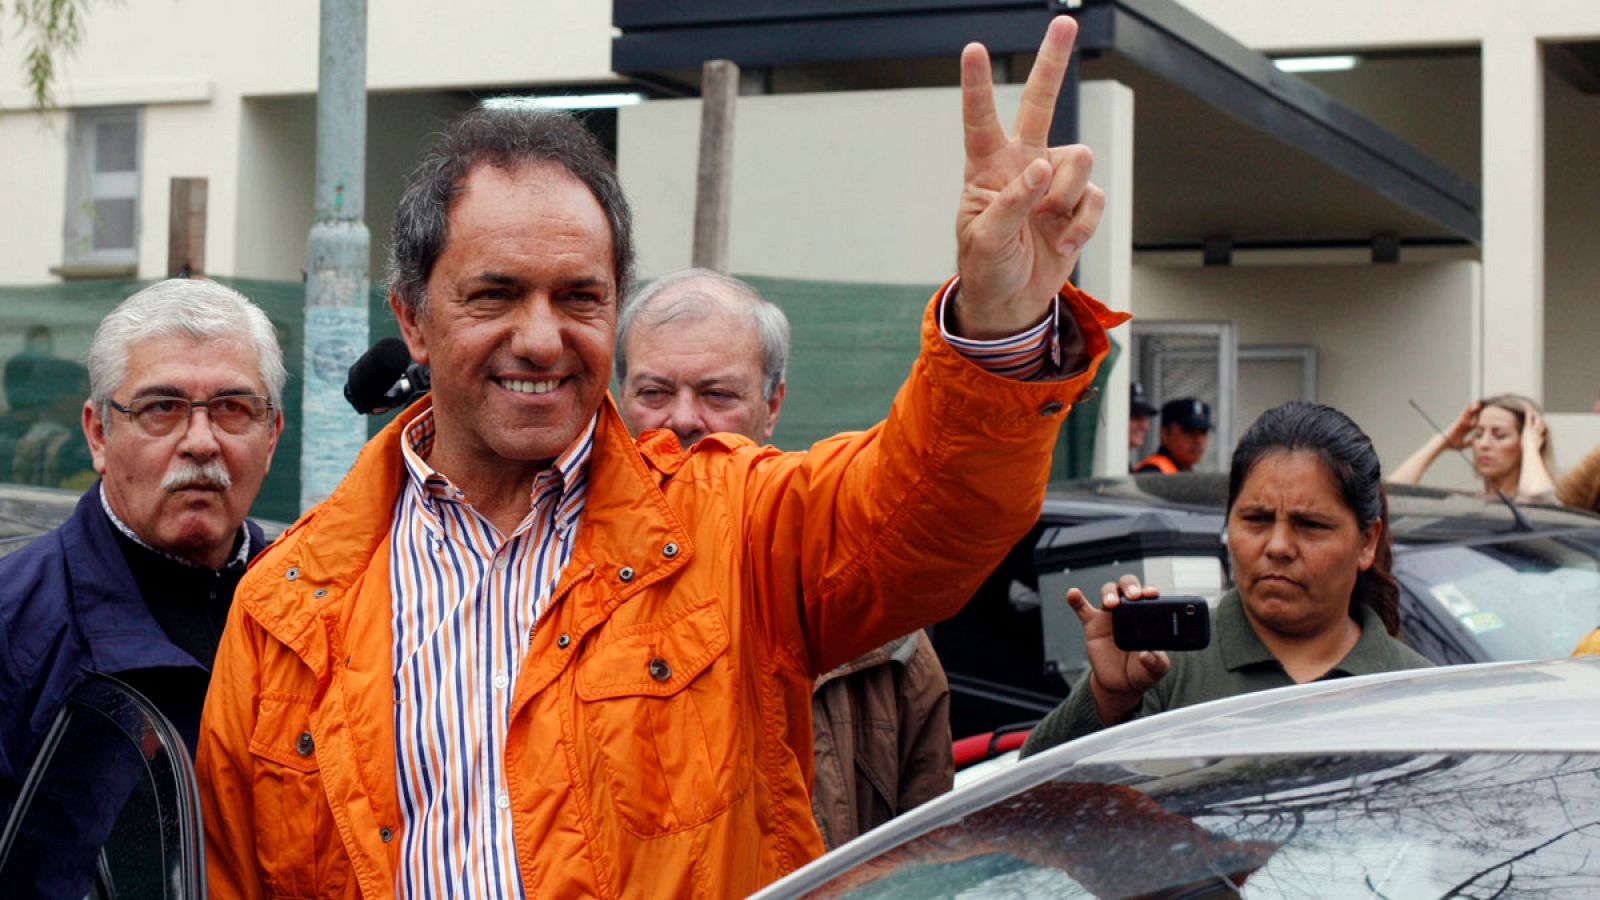 El candidato kirchnerista, Daniel Scioli, tras depositar su voto en un colegio electoral de Buenos Aires.